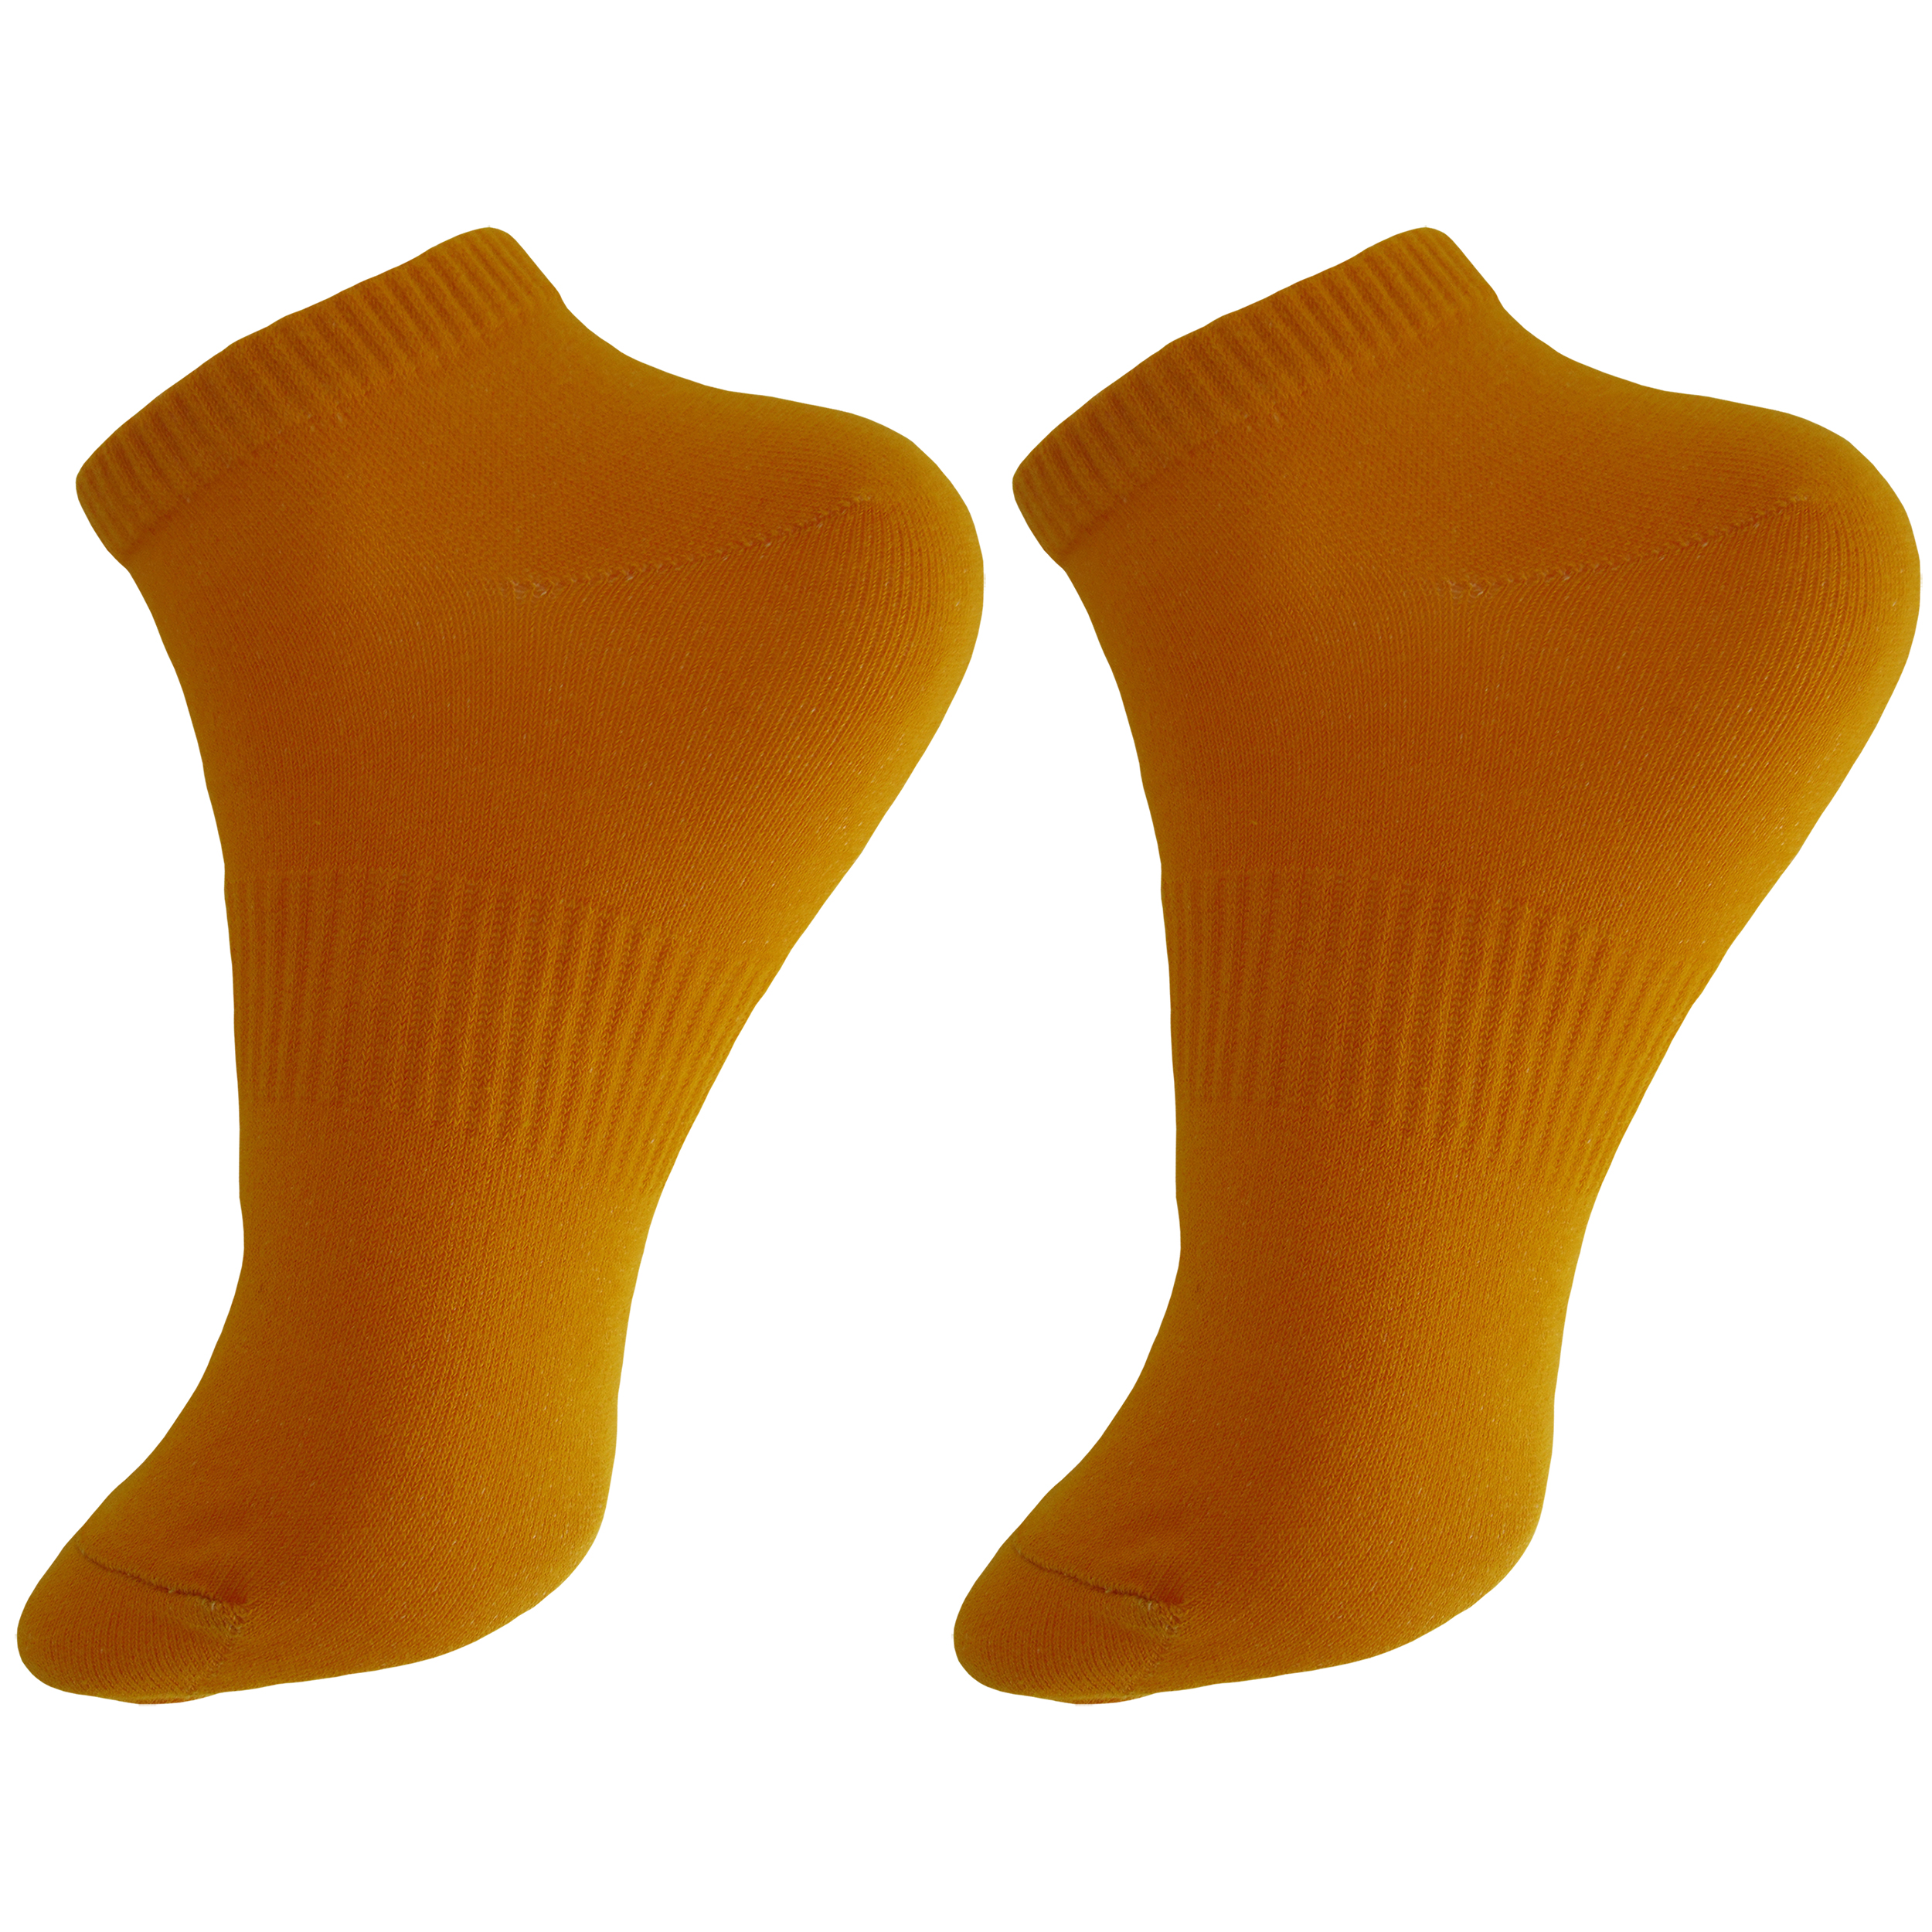 جوراب ورزشی ساق کوتاه مردانه ادیب مدل اسپرت کش انگلیسی کد MNSPT رنگ نارنجی بسته 3 عددی